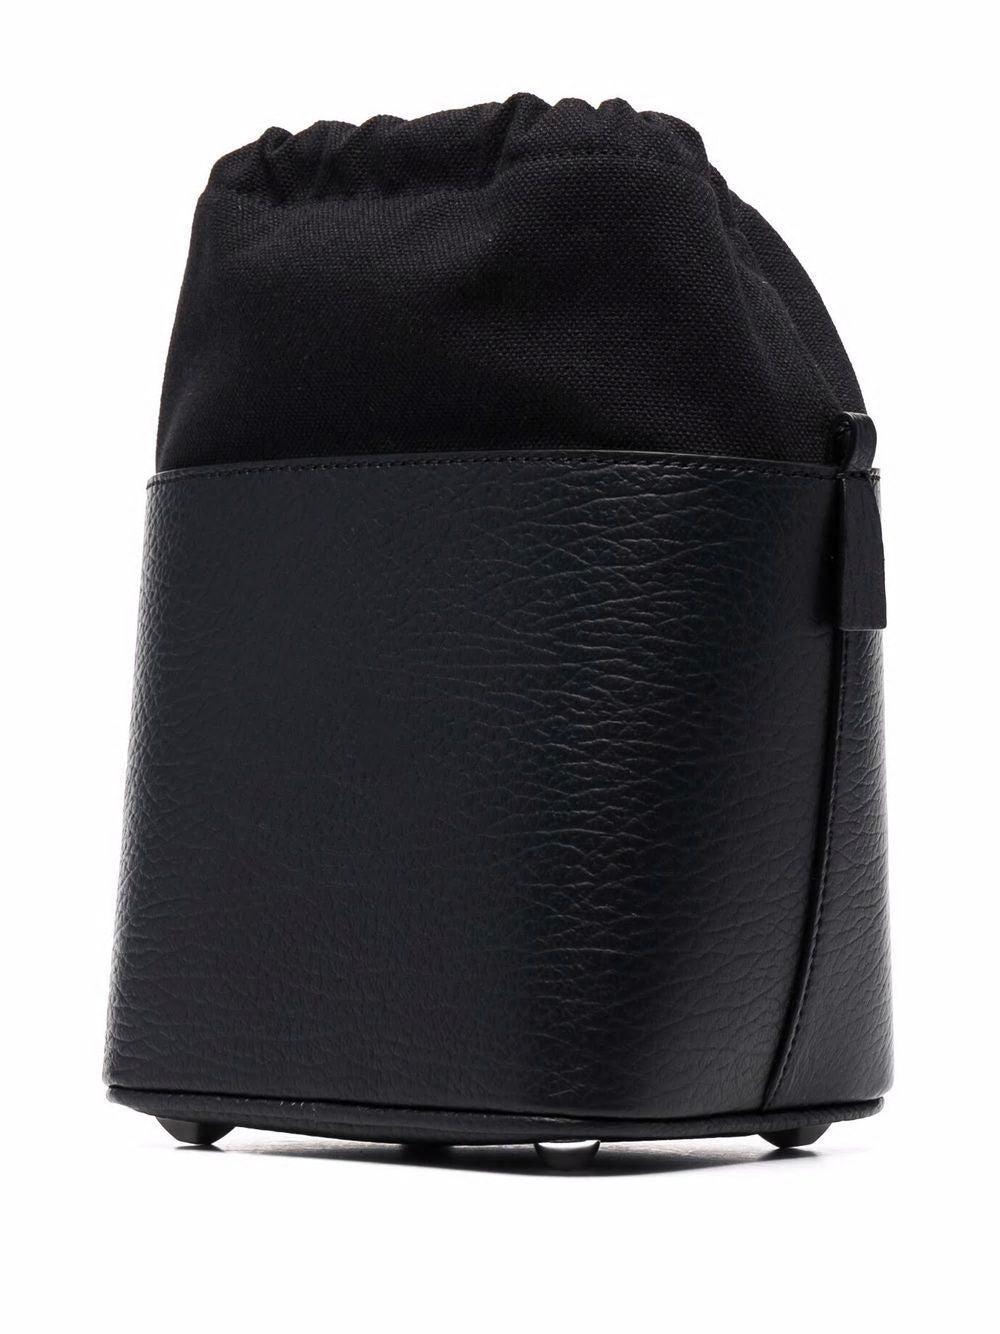 經典女士黑色皮革桶袋 - FW23 系列